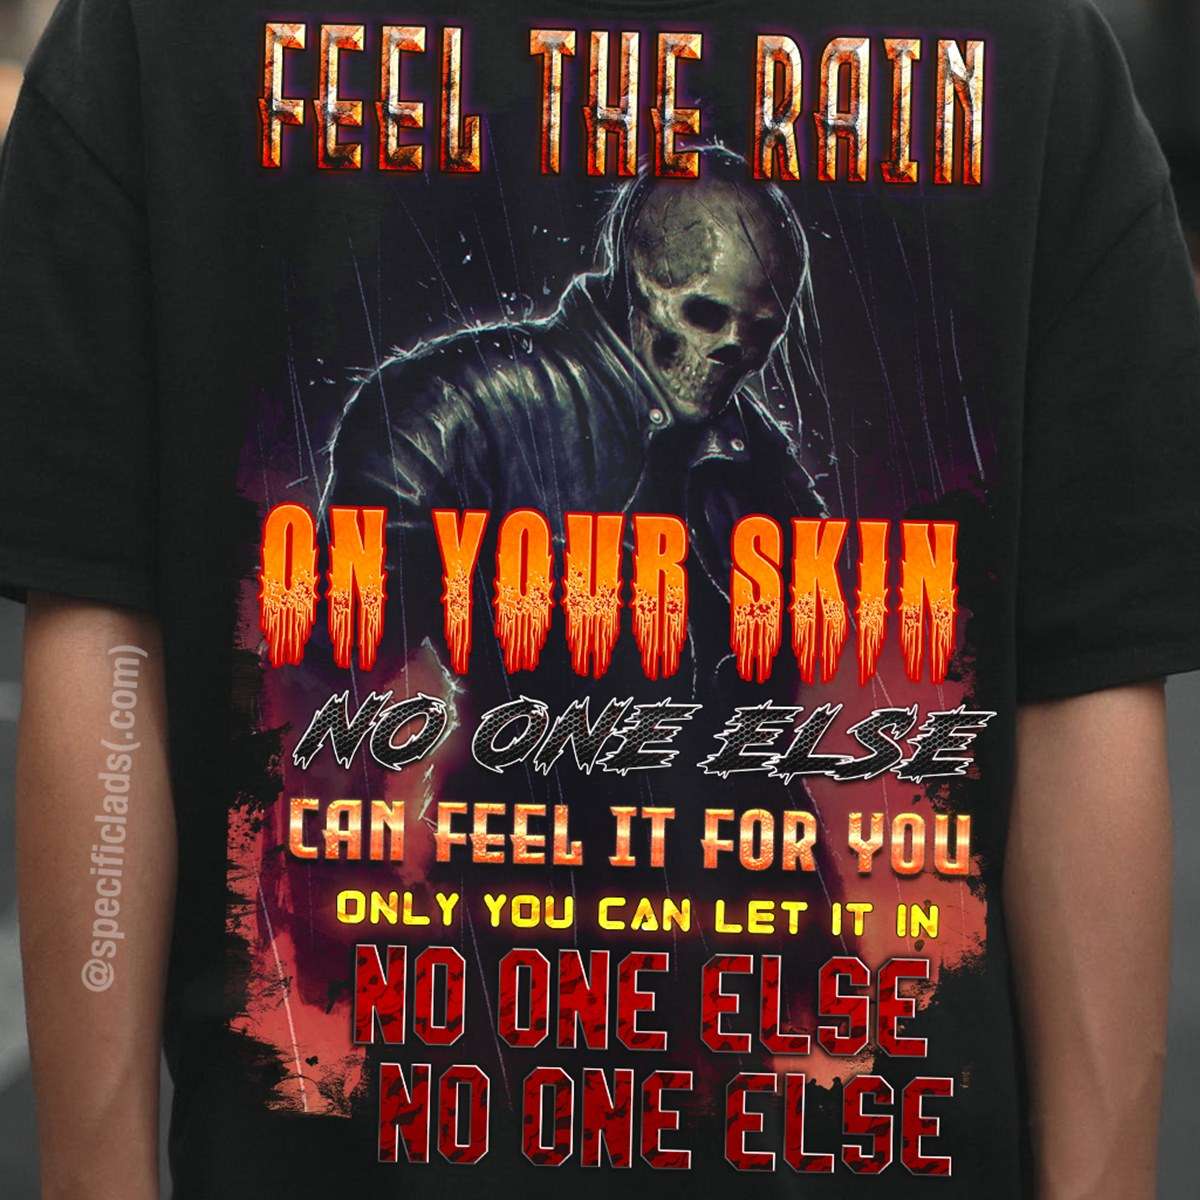 Feel the rain on your skin - Skull under the rain, devil skull for halloween